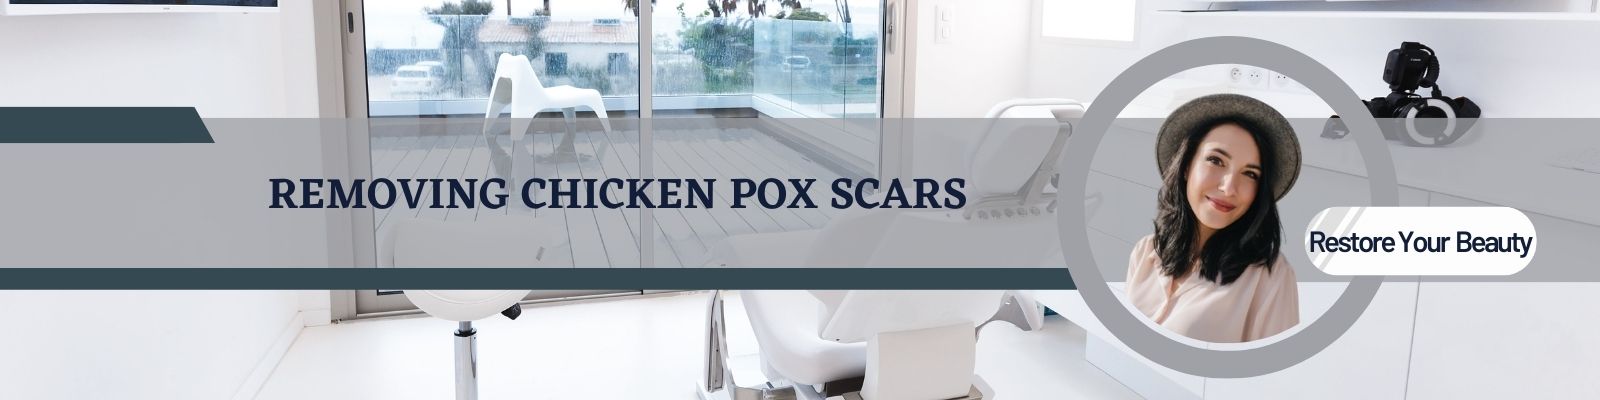 Chicken pox scar